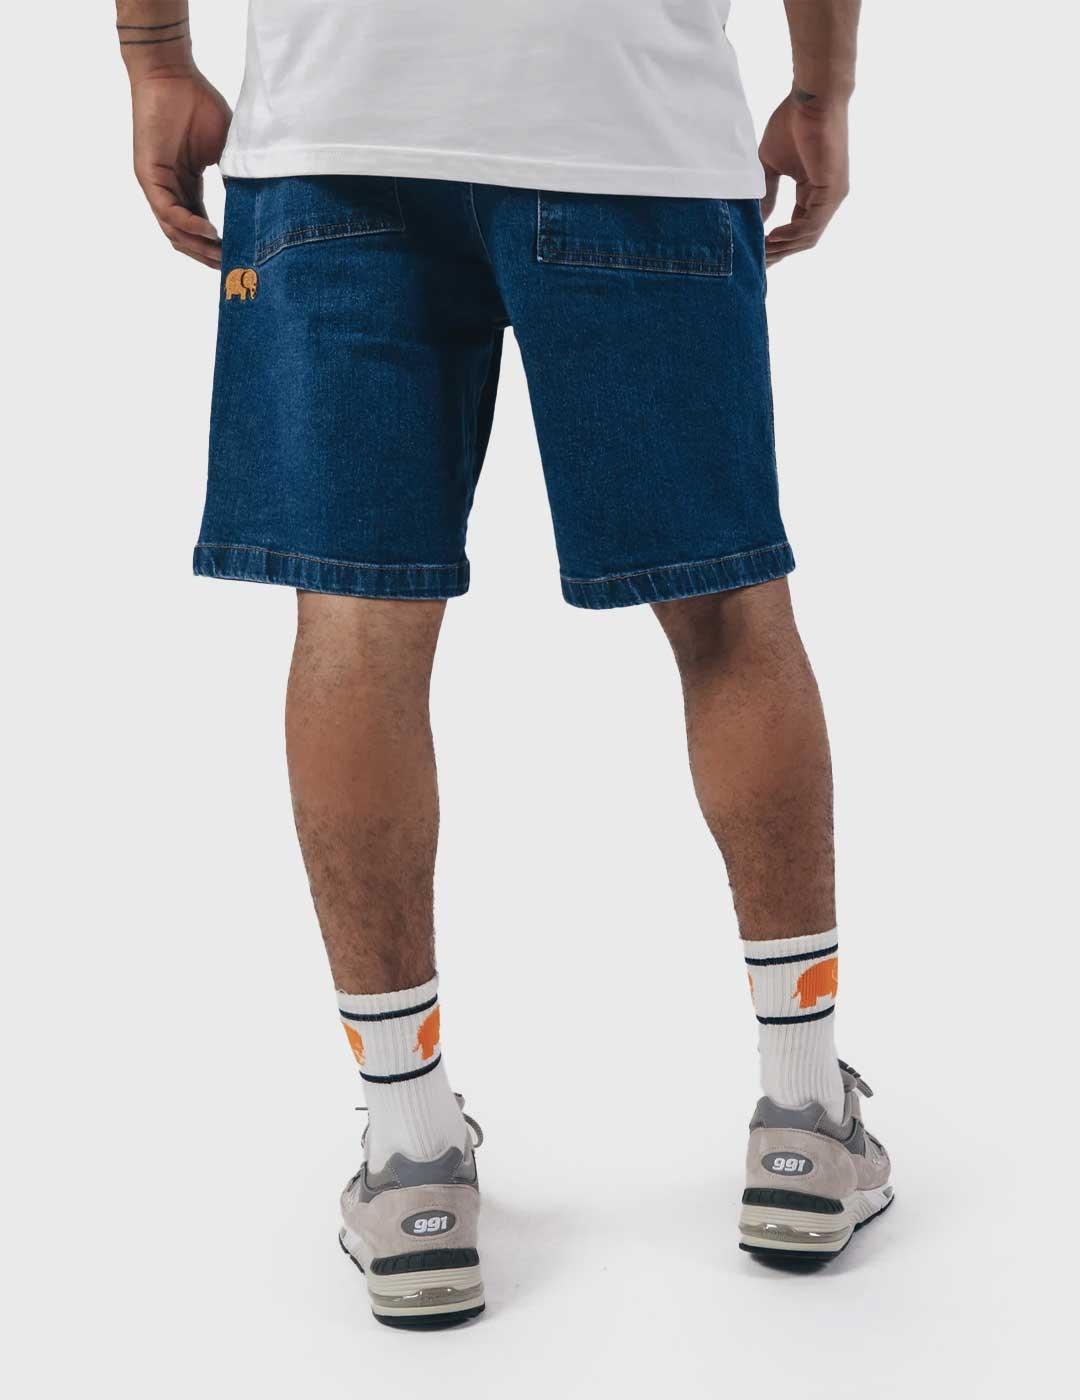 Trendsplant Recycled Climber Shorts Pantalón corto azul